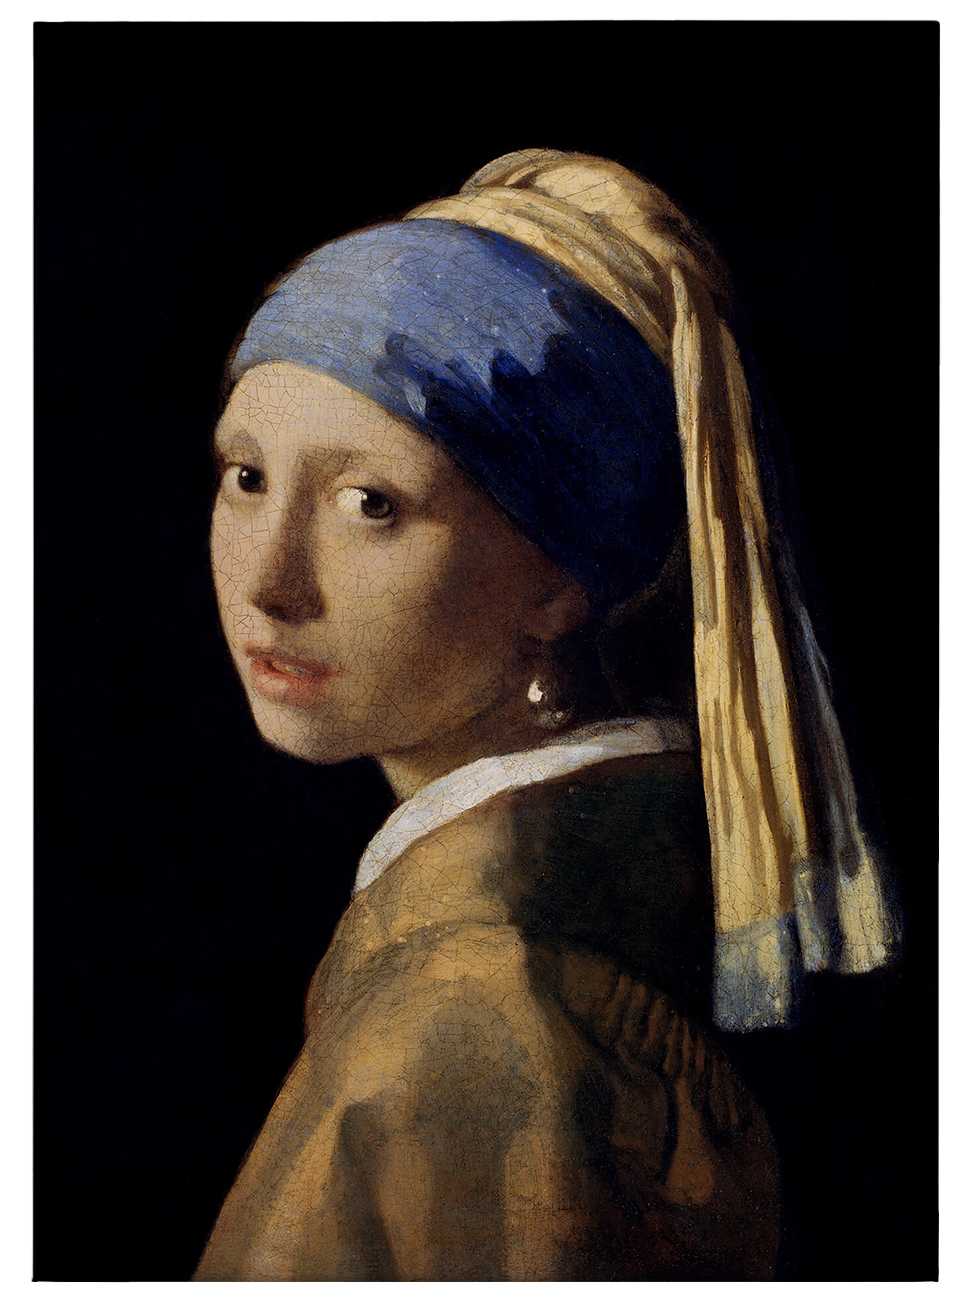             Quadro su tela "La ragazza con l'orecchino di perla" di Dürer - 0,50 m x 0,70 m
        